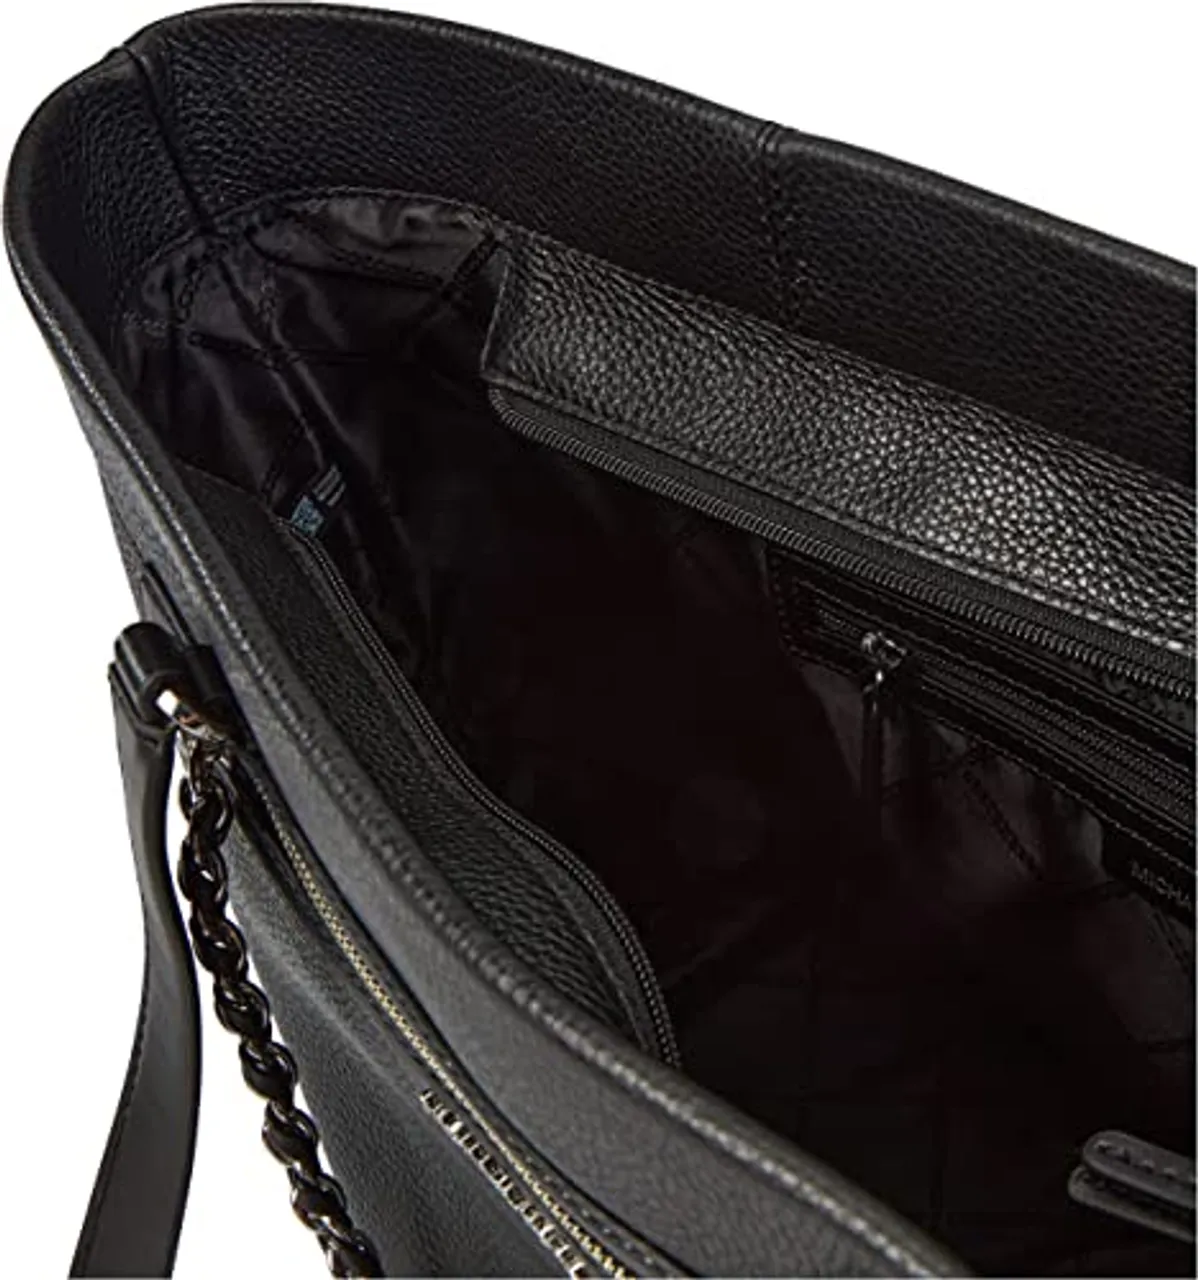 Handtaschen schwarz Beutel One Size